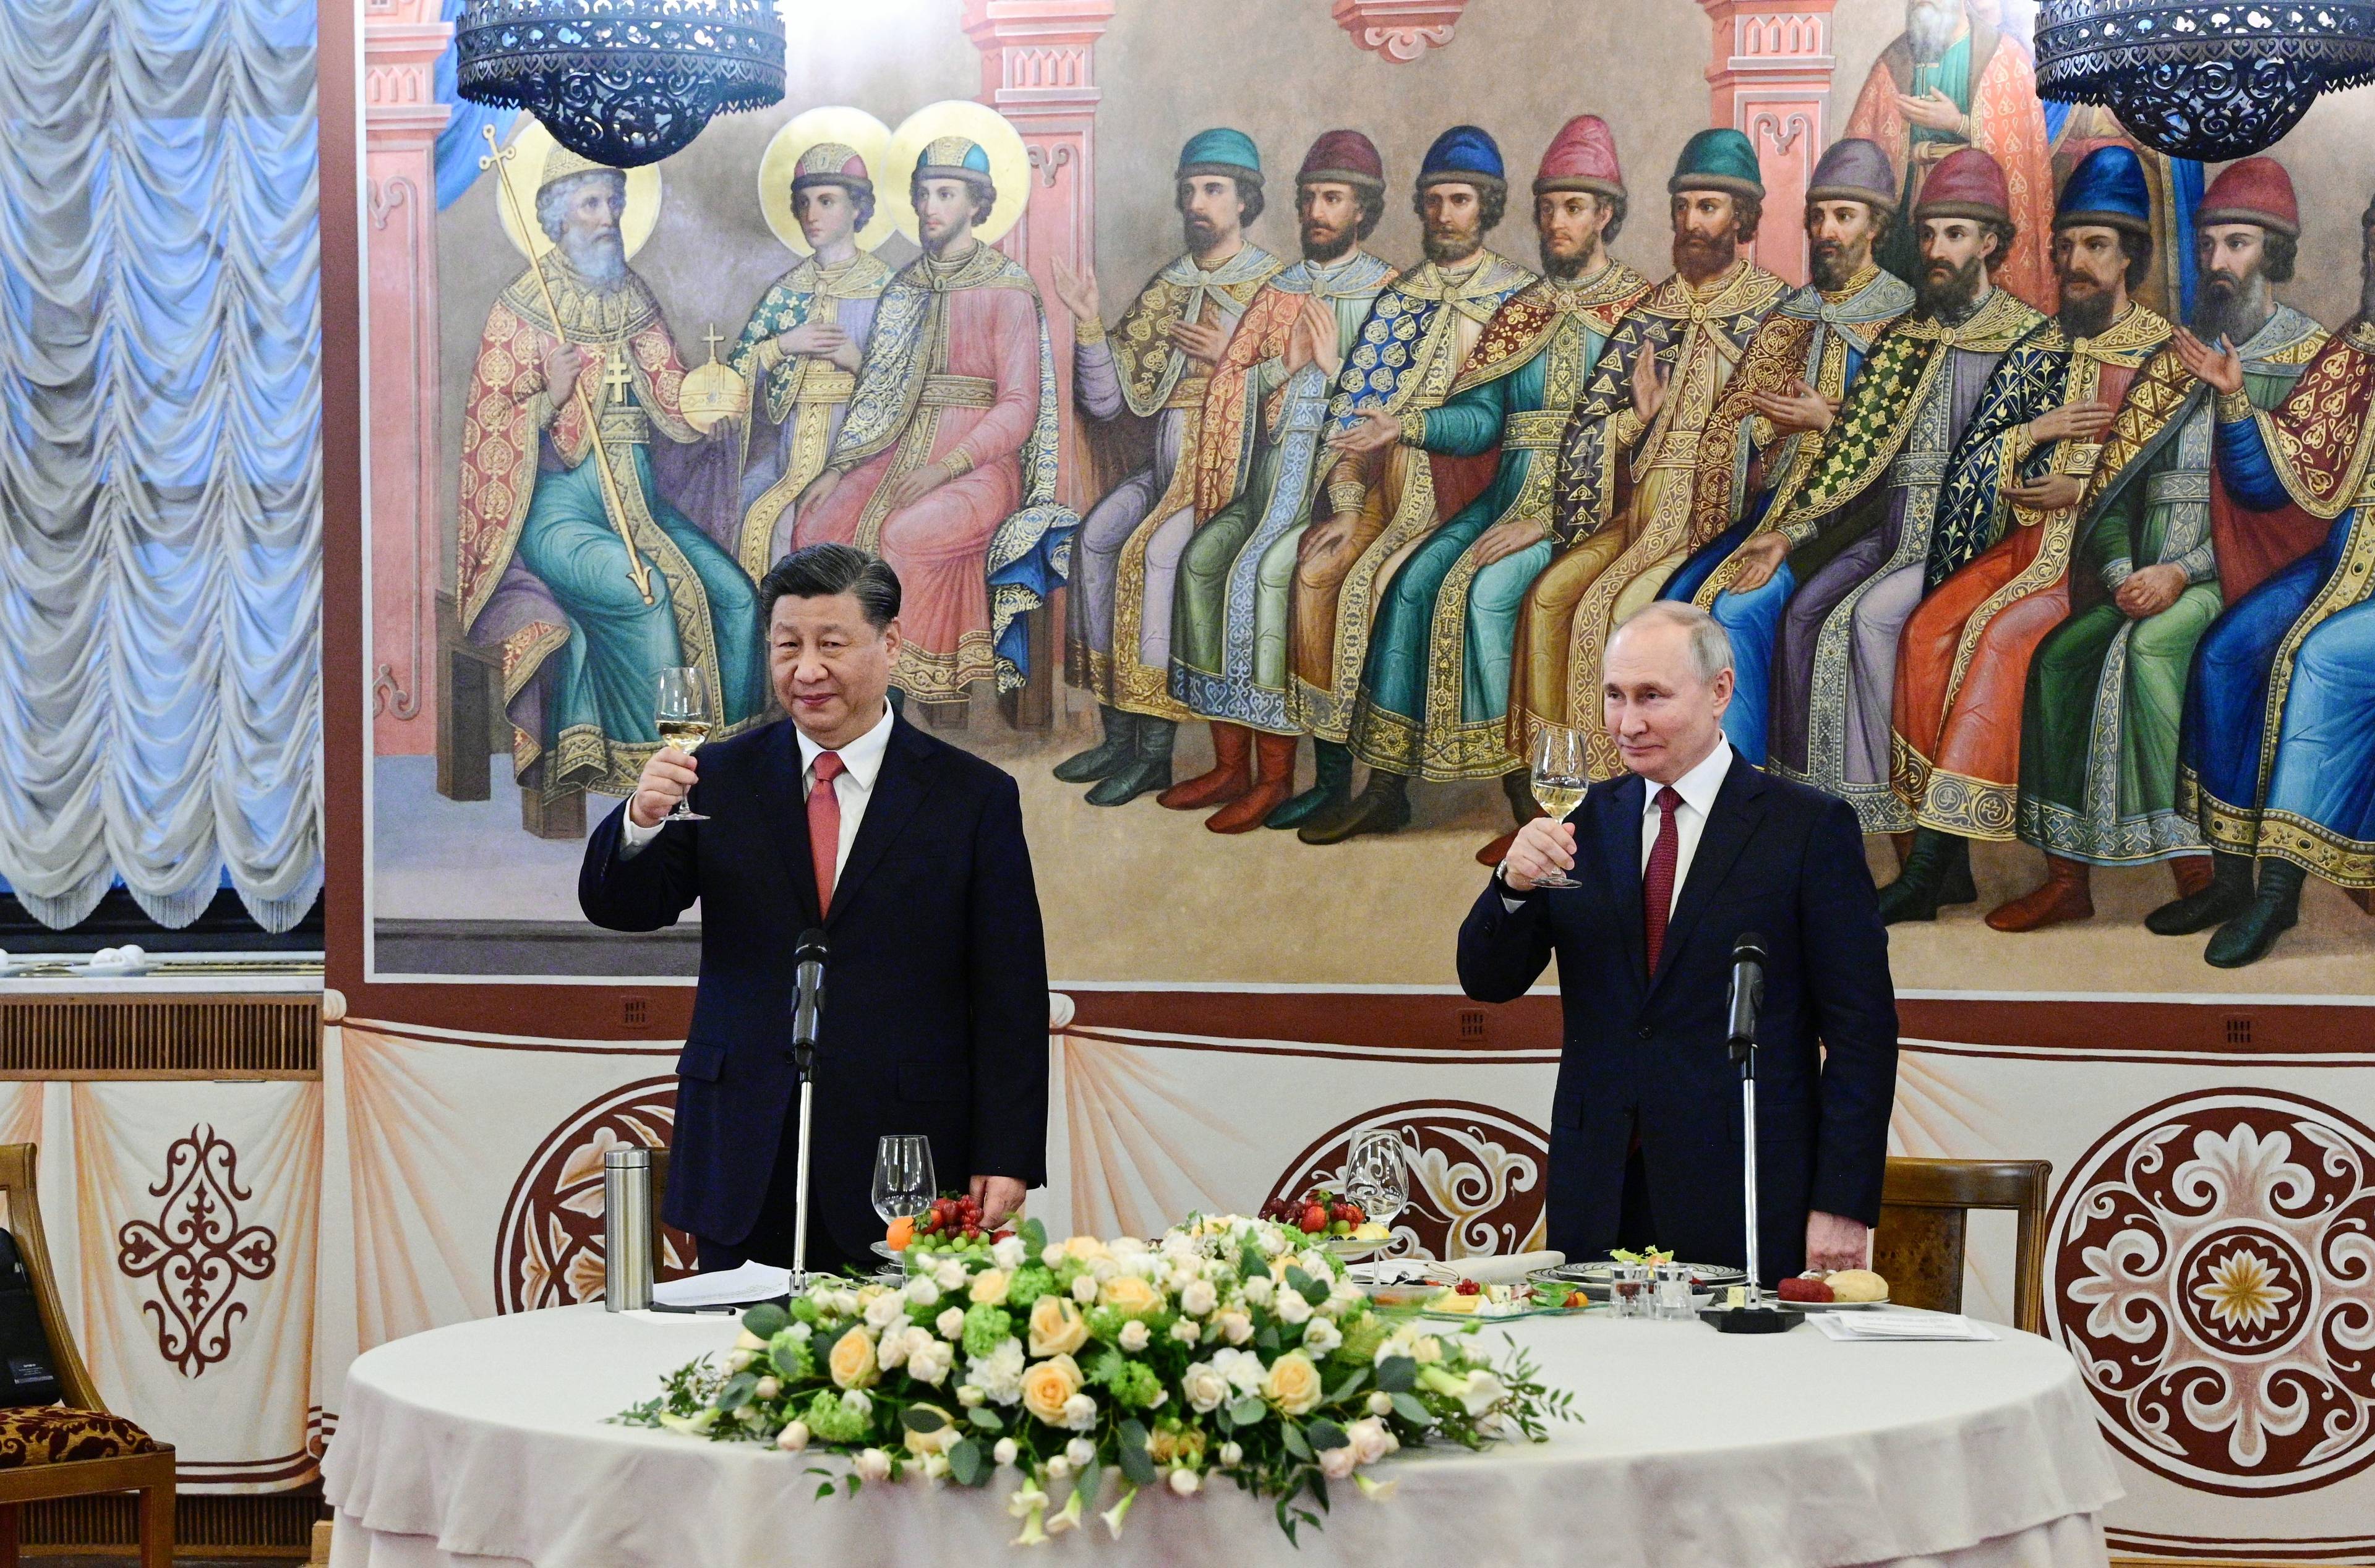 Władimir Putin i Xi Jinping stoją przy stole bankietowym z kieliszkami. Na stole żółte kwiaty, za politykami fresk